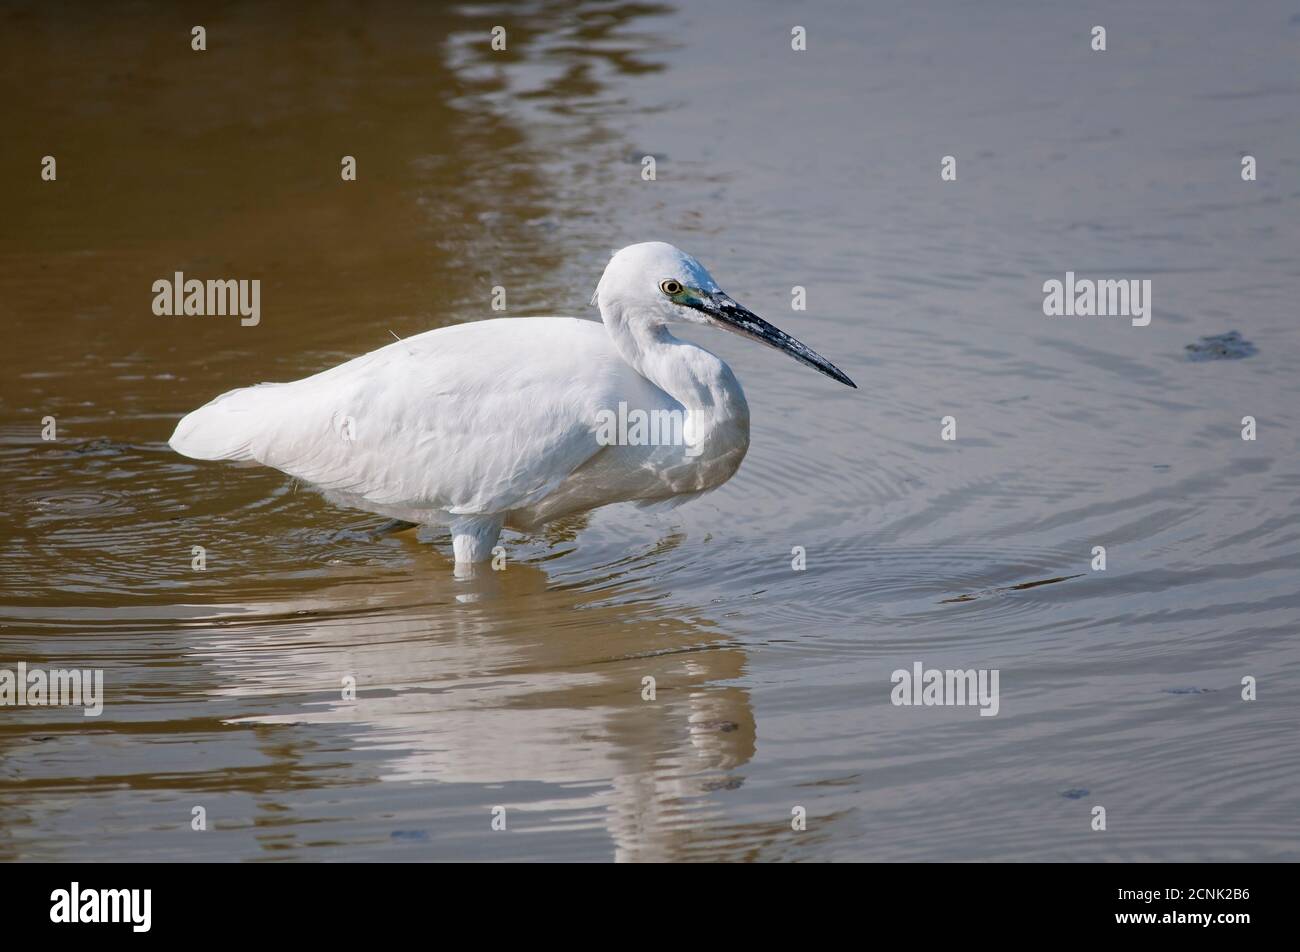 Little egret, Egretta garzetta, Ardeidae, foraging in shallow water. Stock Photo